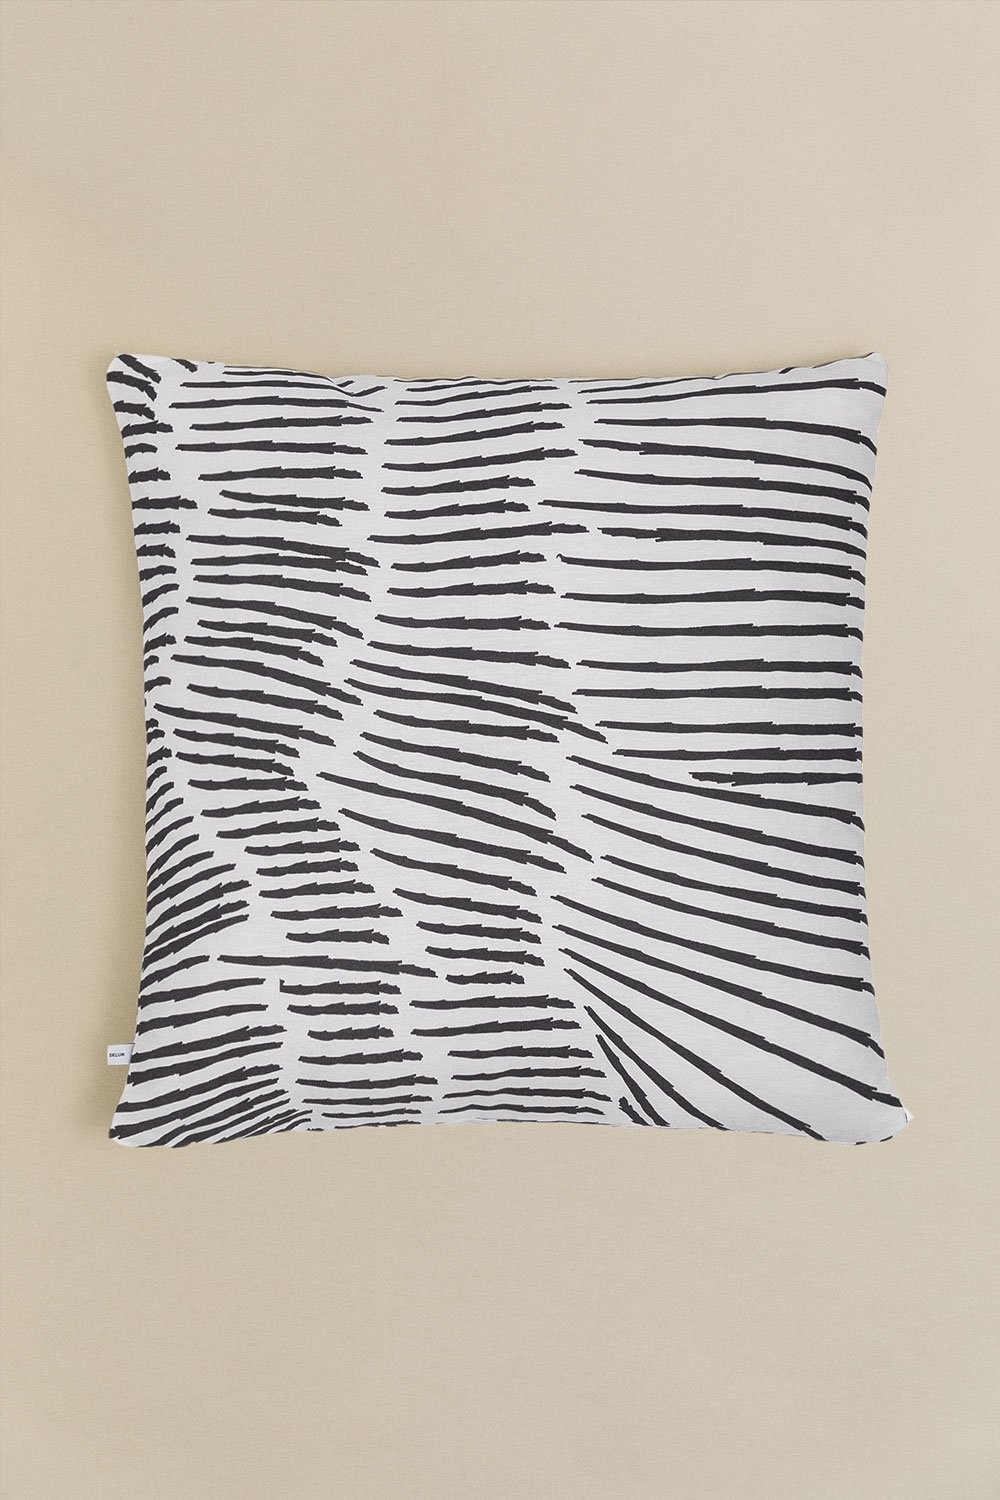 Federa per cuscino quadrata in cotone (60x60 cm) Ubongo Style, immagine della galleria 1